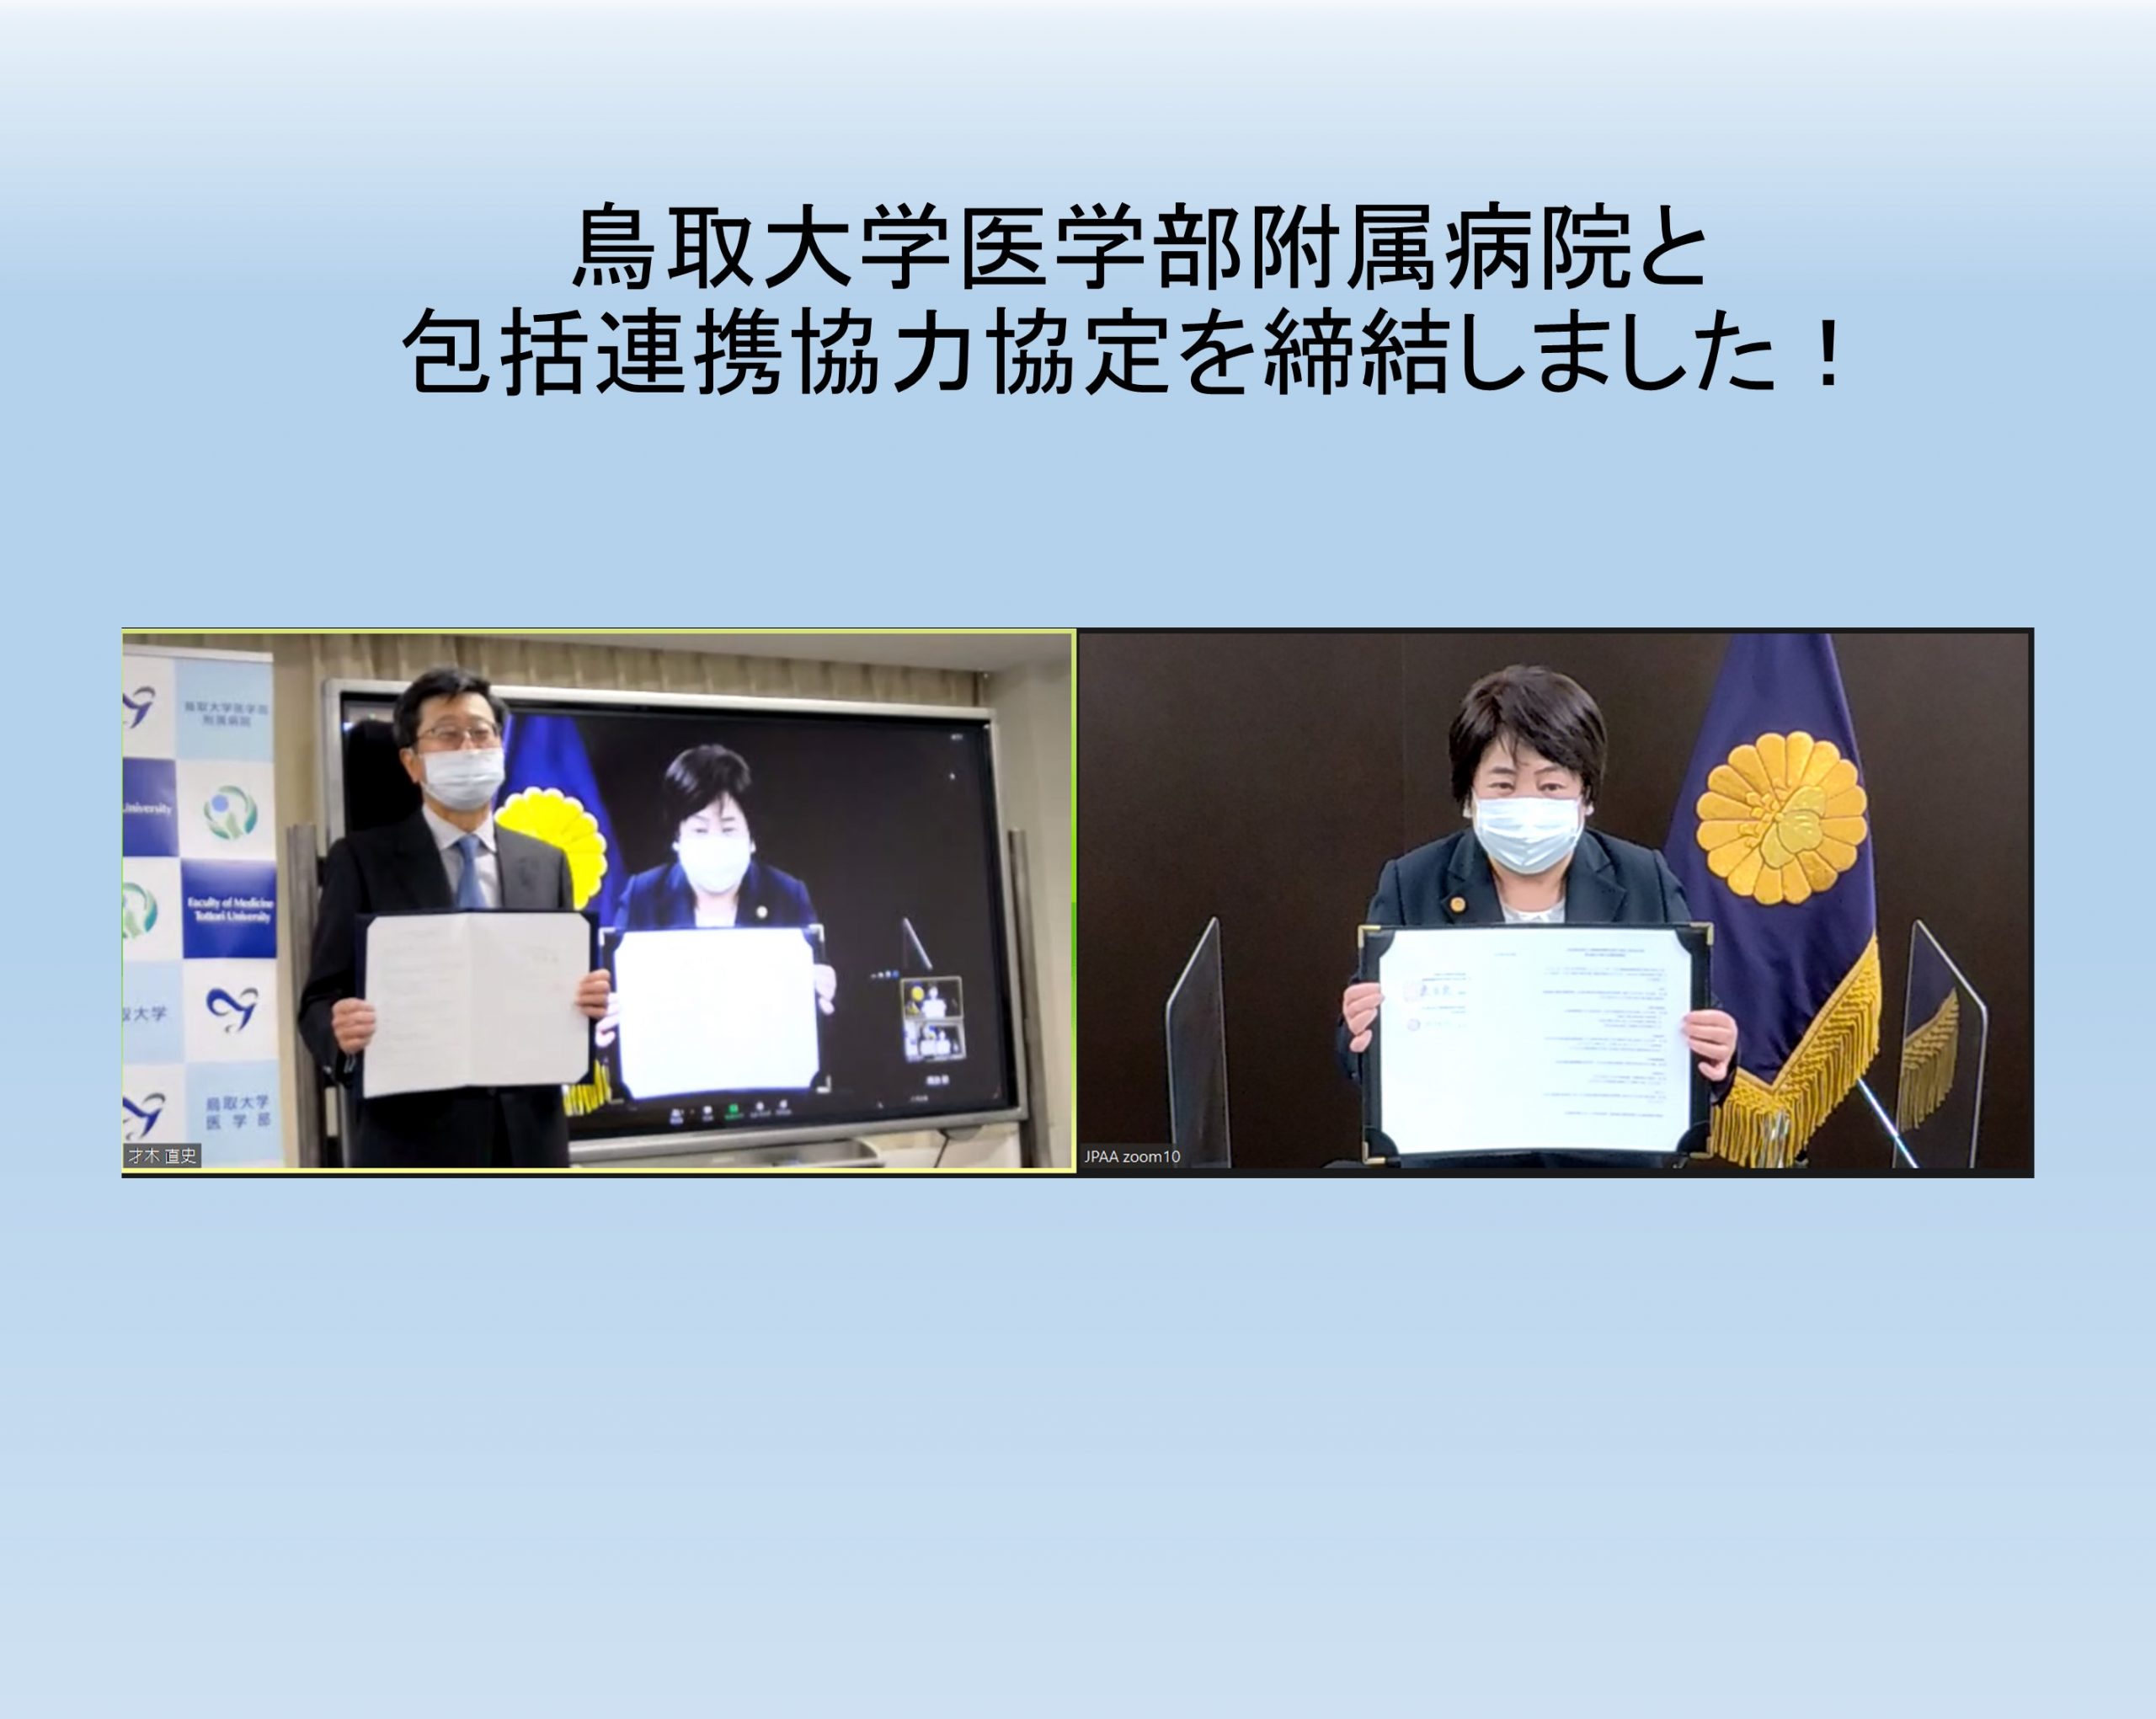 鳥取大学医学部附属病院と包括連携協力協定を締結しました！